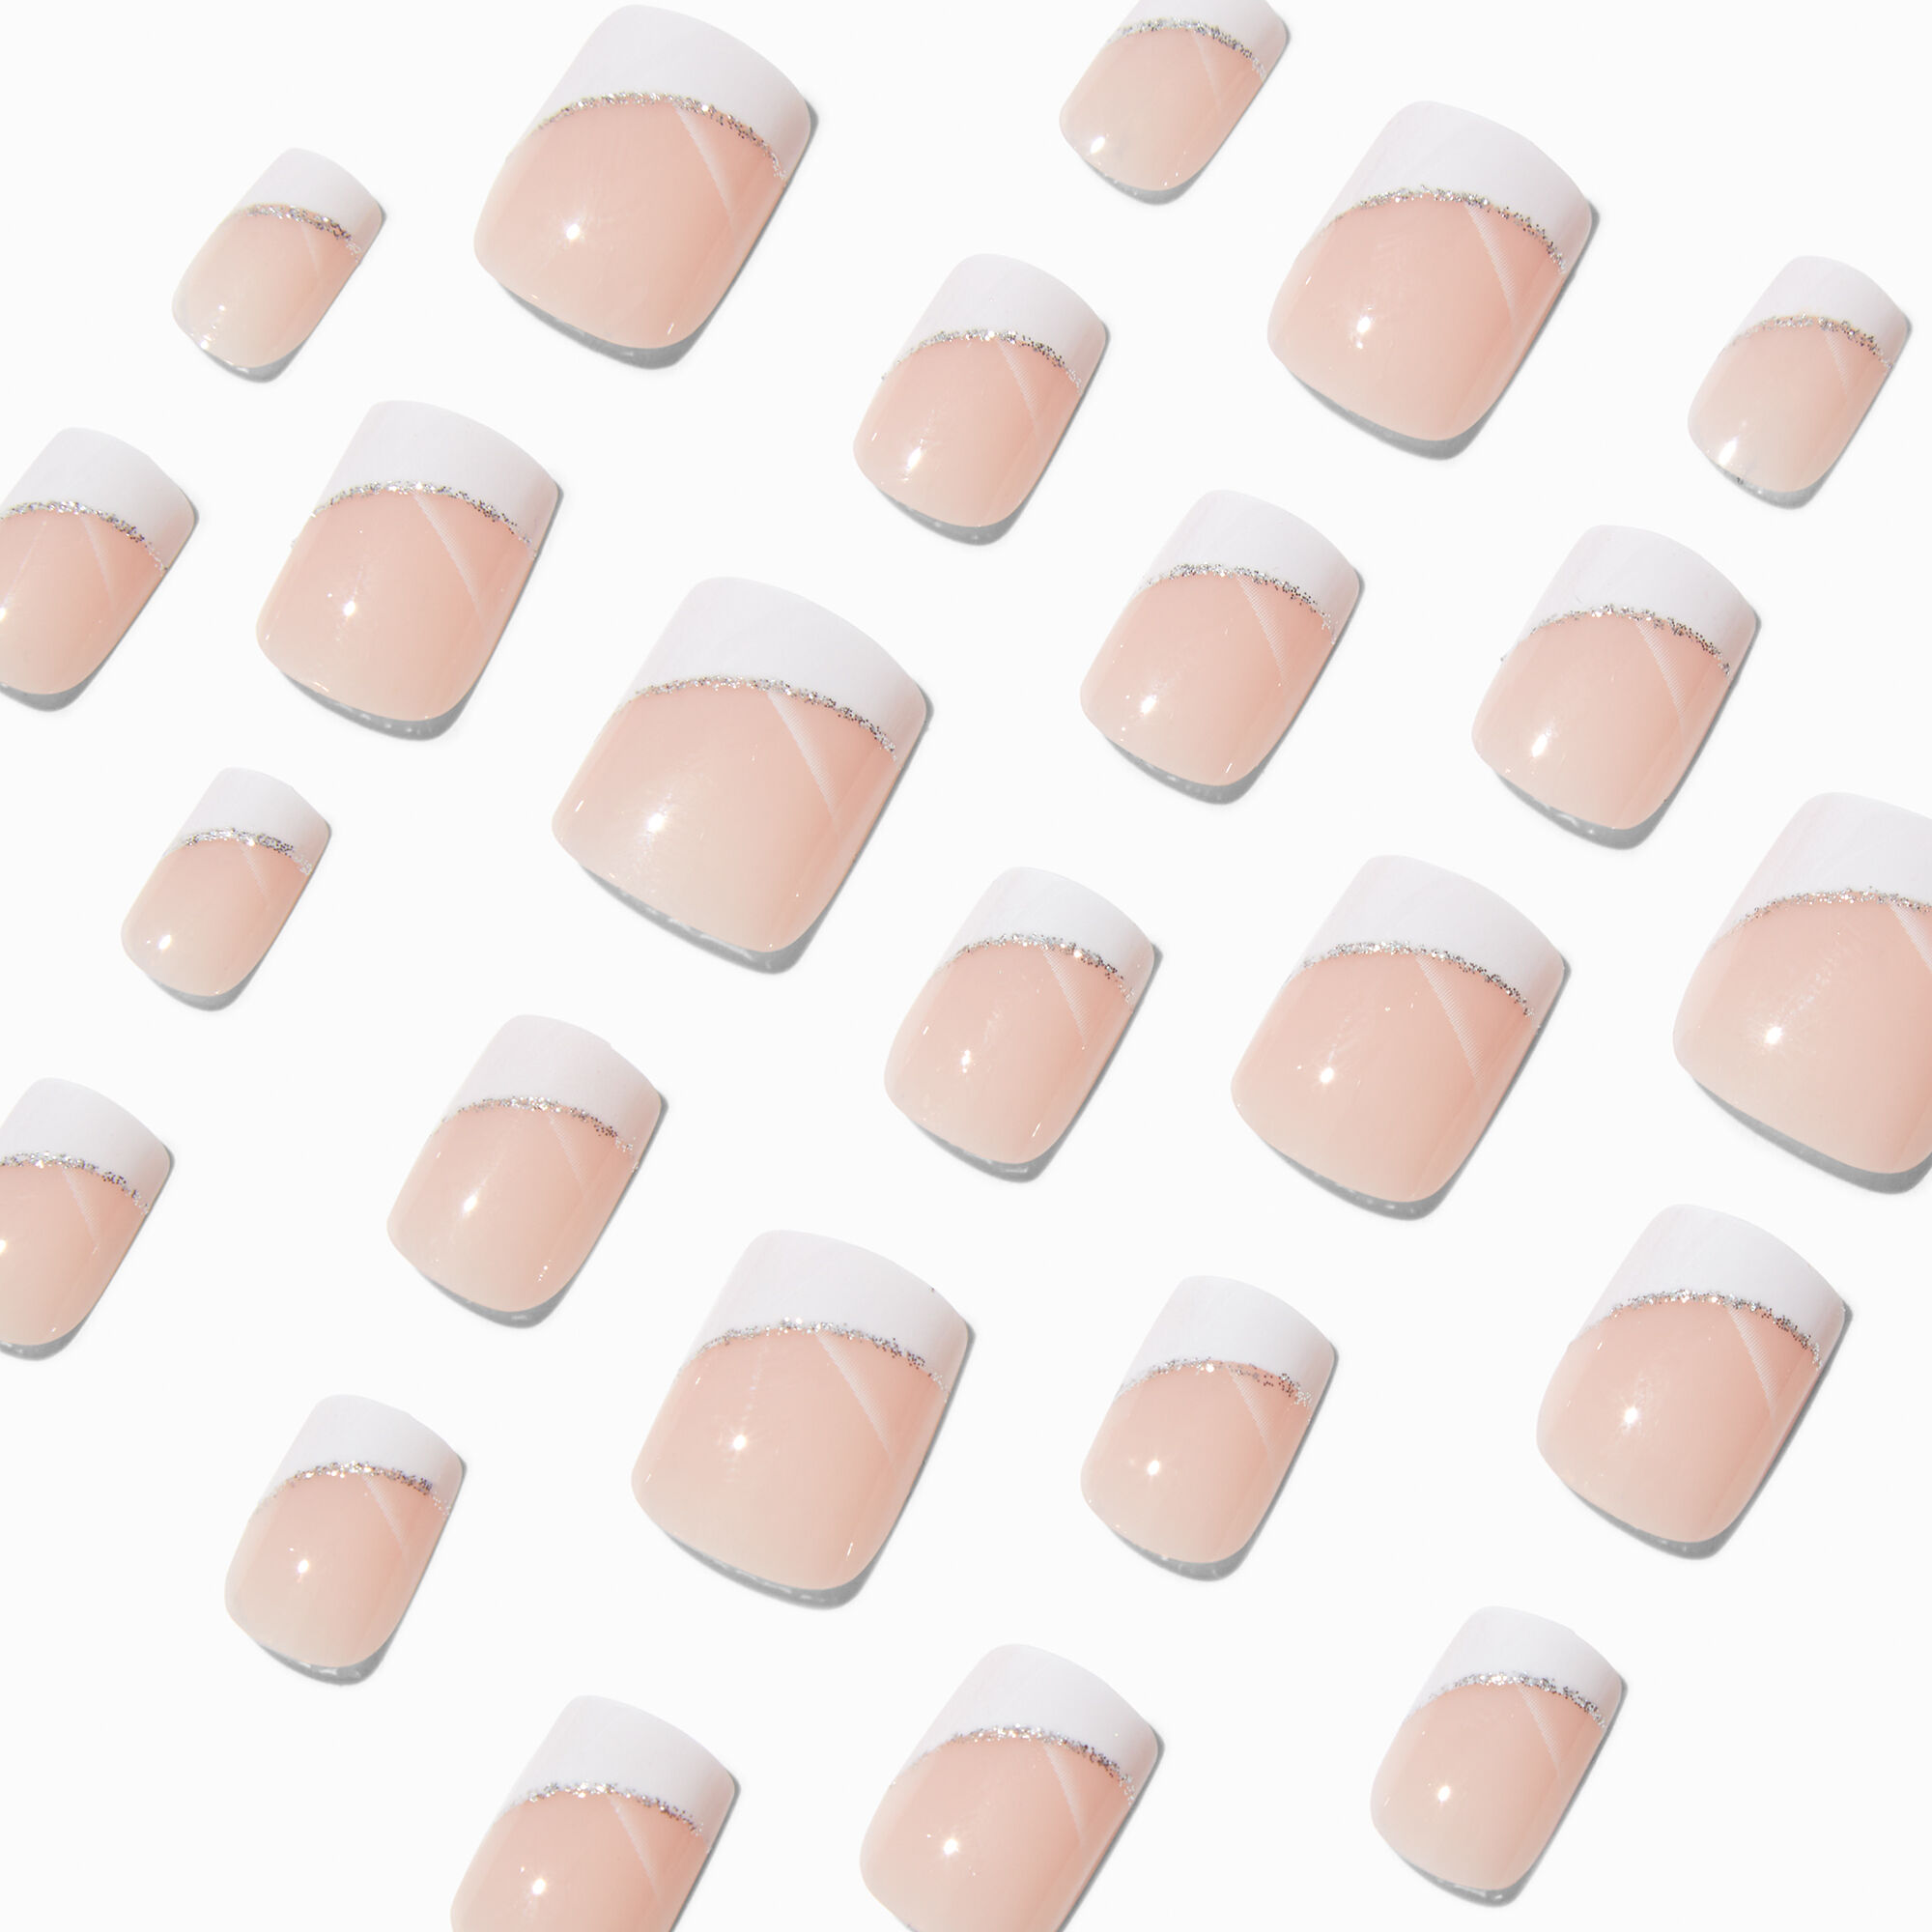 Claire's Nails Faux False w/Glue Matte Grey Gray Iridescent Pink Manicure  Set | eBay